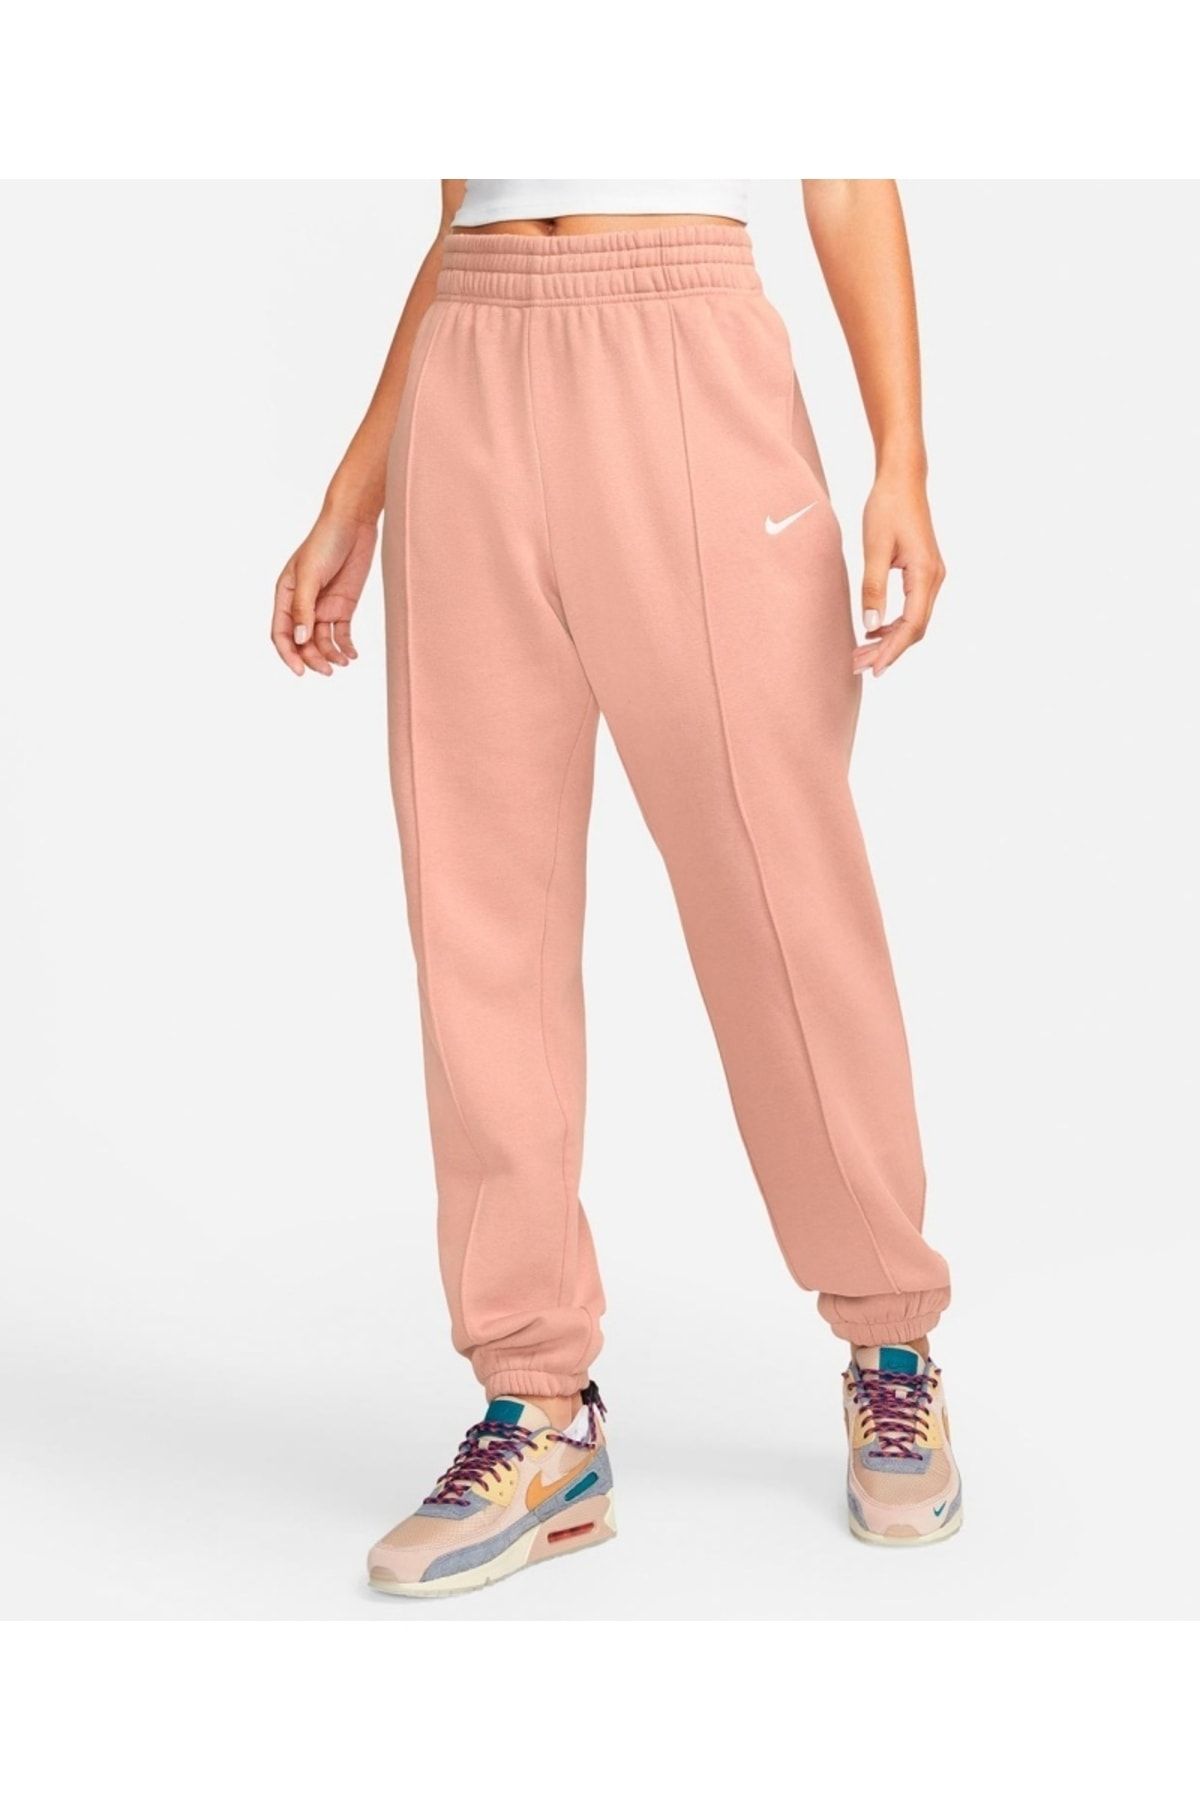 Nike Sportswear Essential Fleece Sweatpant Women's Pink Sweatpants -  Trendyol